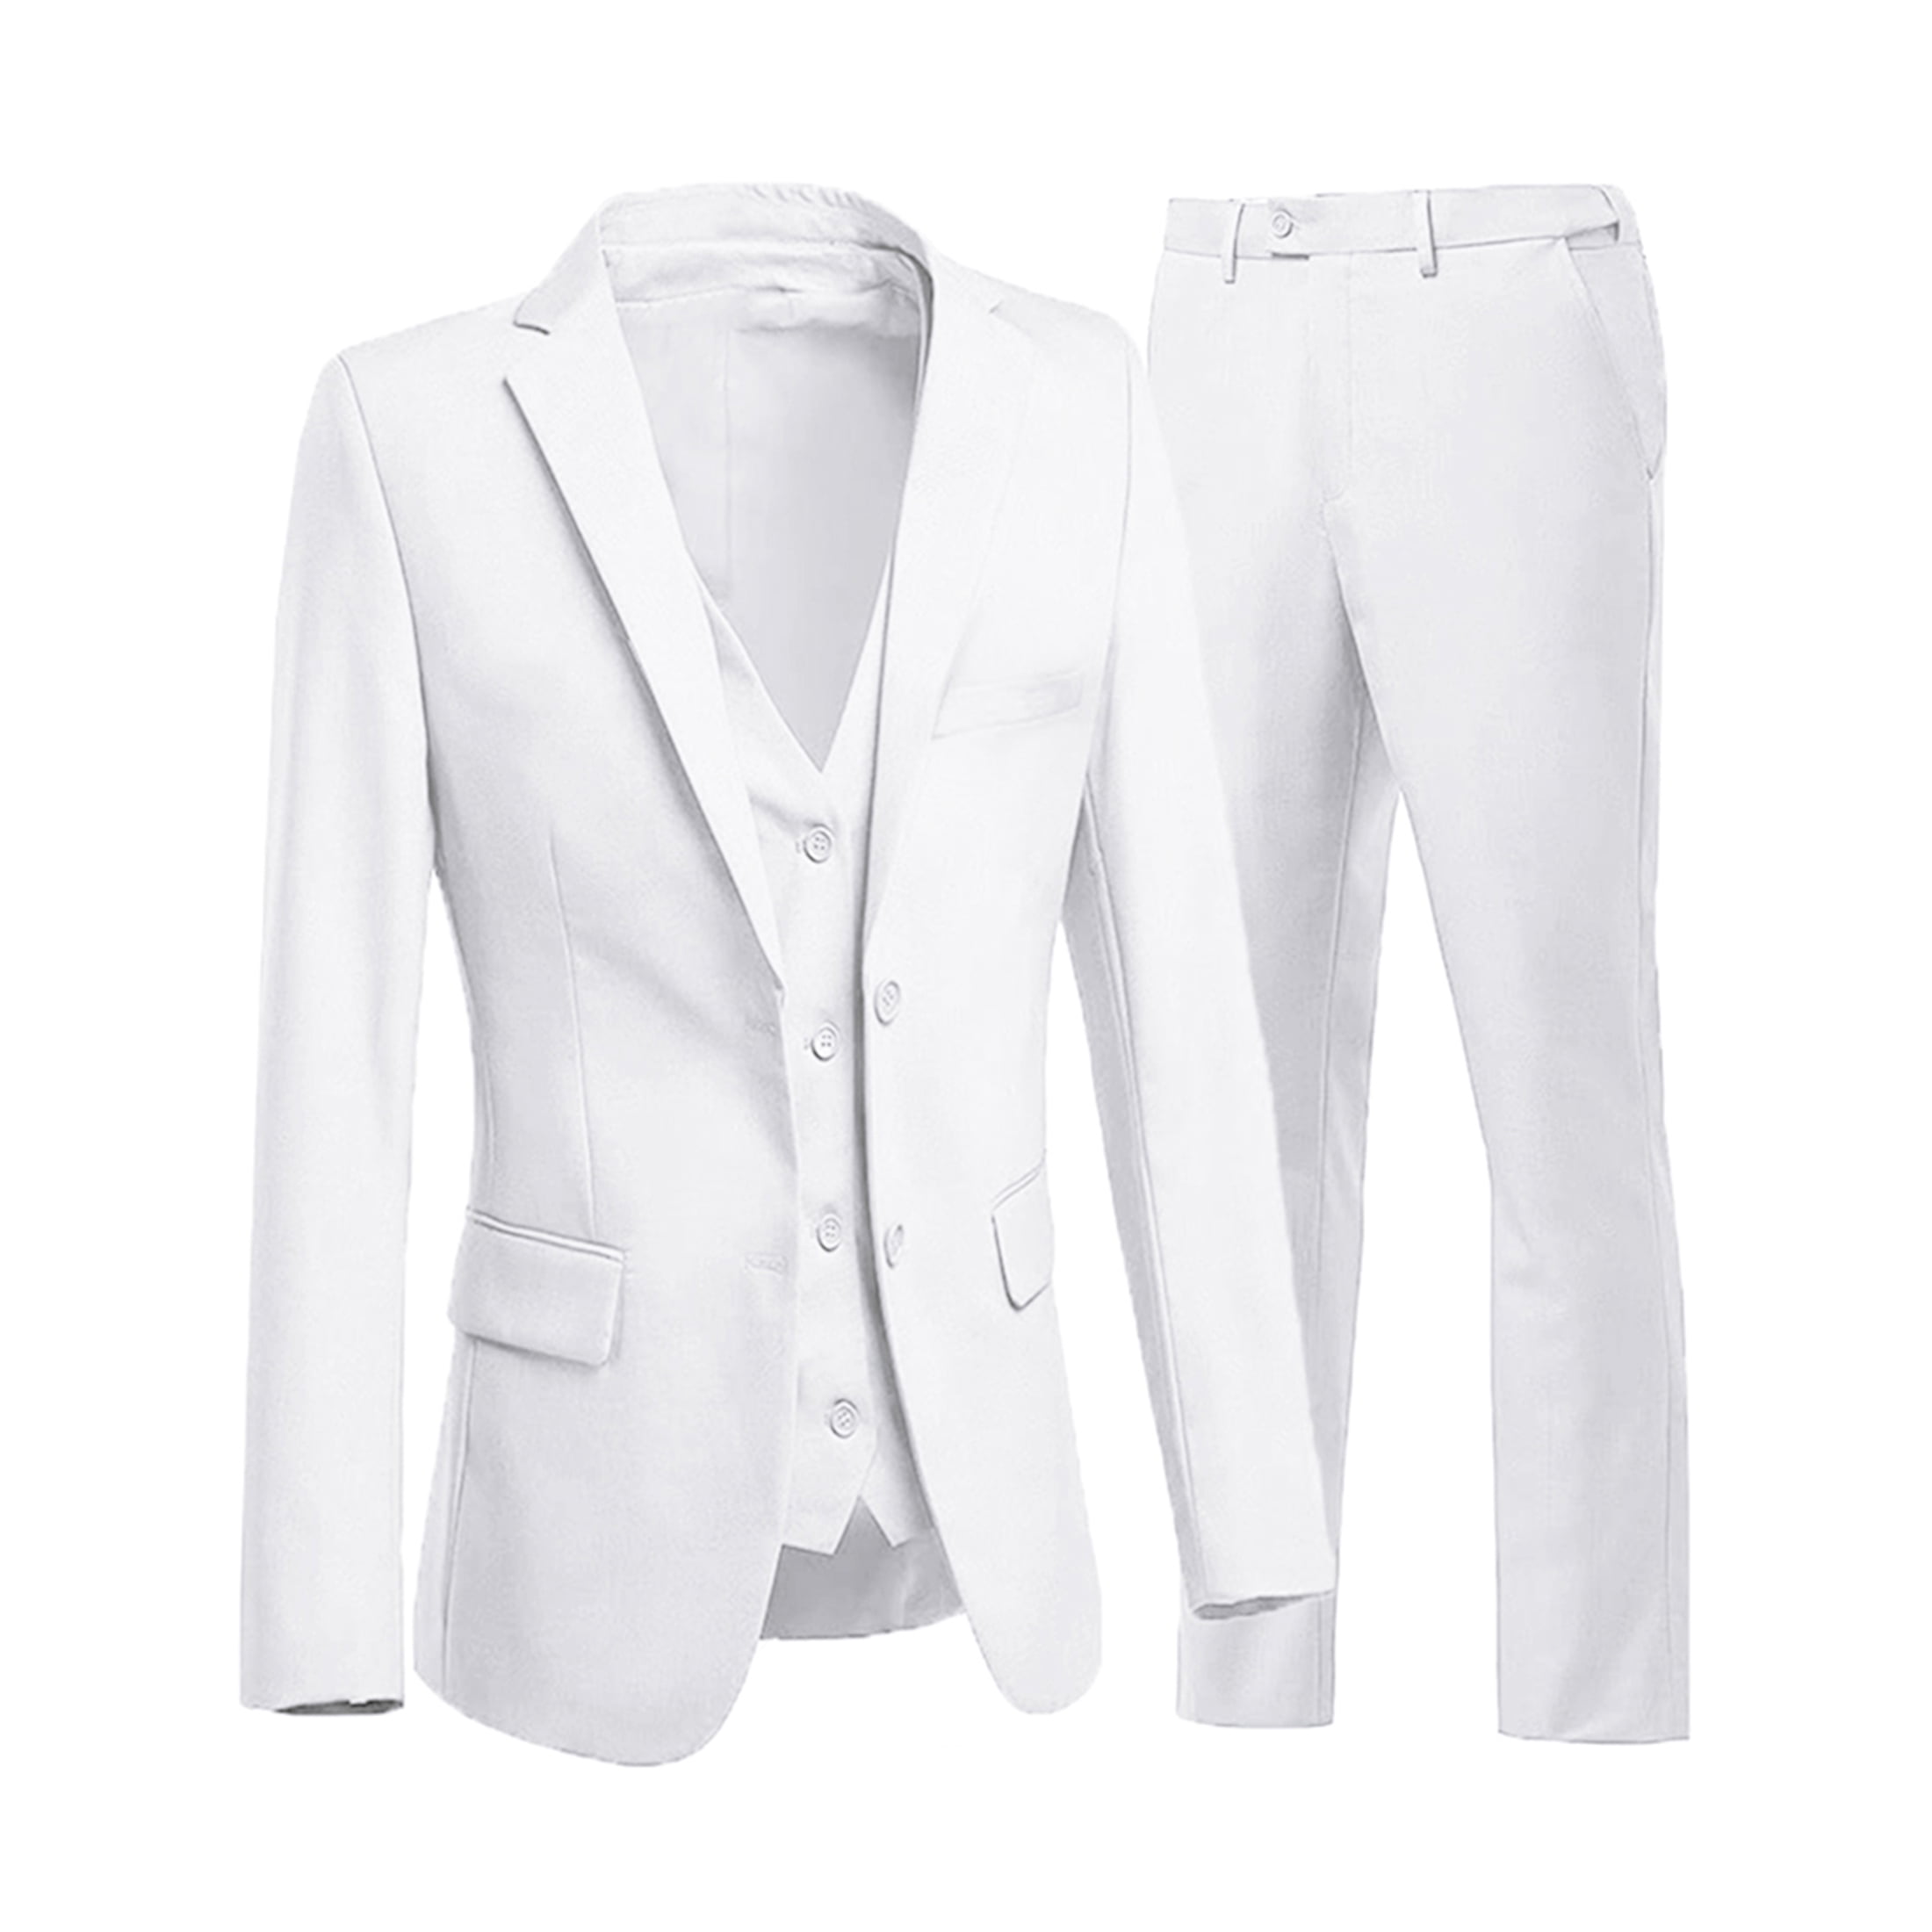 Wehilion Mens White Suit 3 Piece Slim Fit Tuxedo Jacket Vest Pants S ...